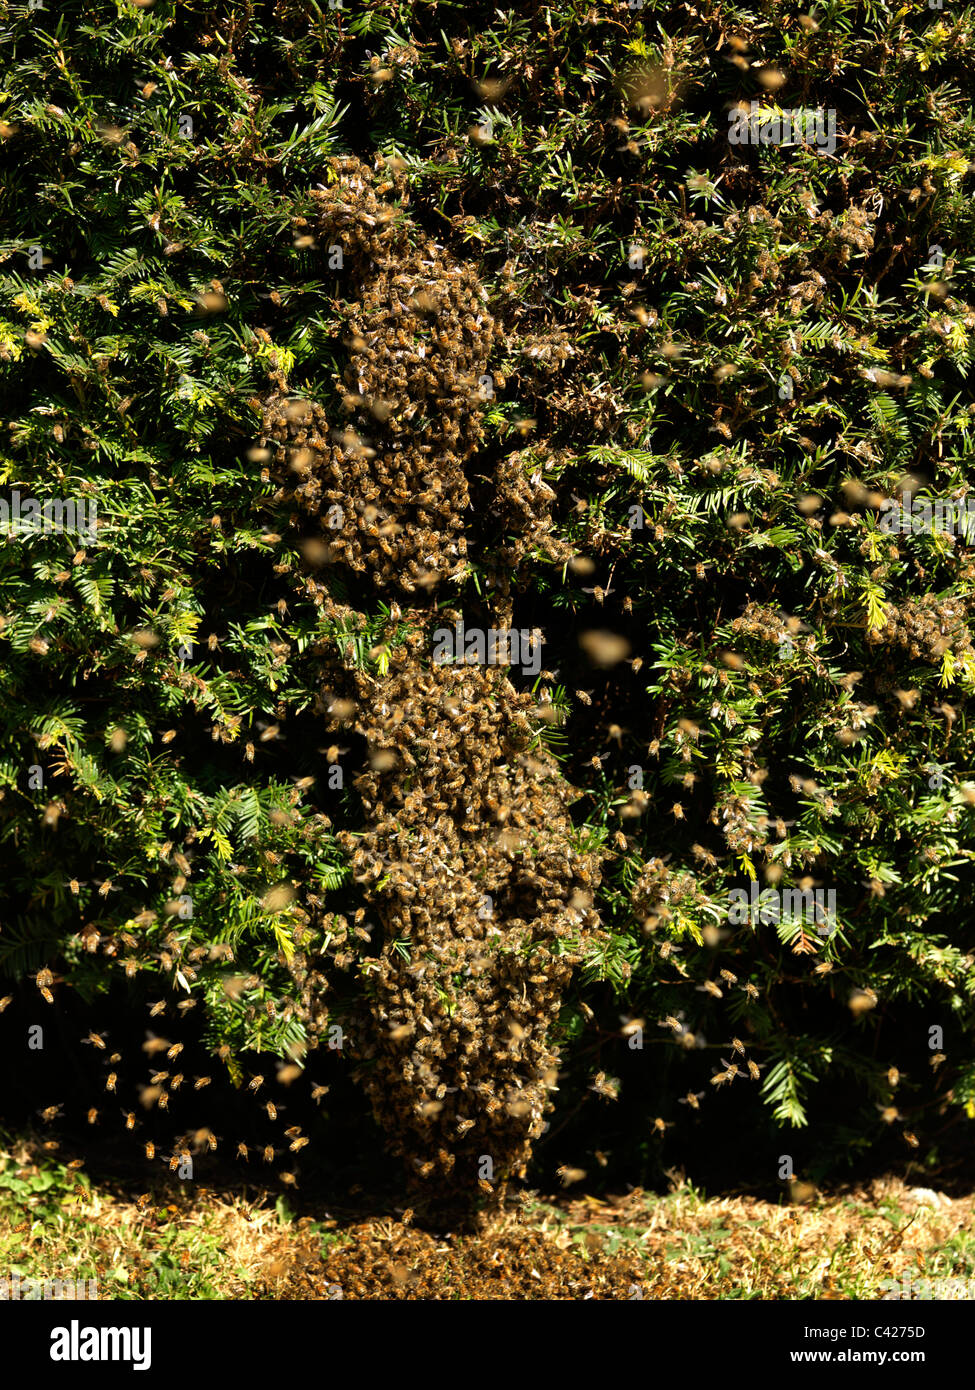 Collecte de l'essaimage des abeilles sur le bas d'un arbre Banque D'Images